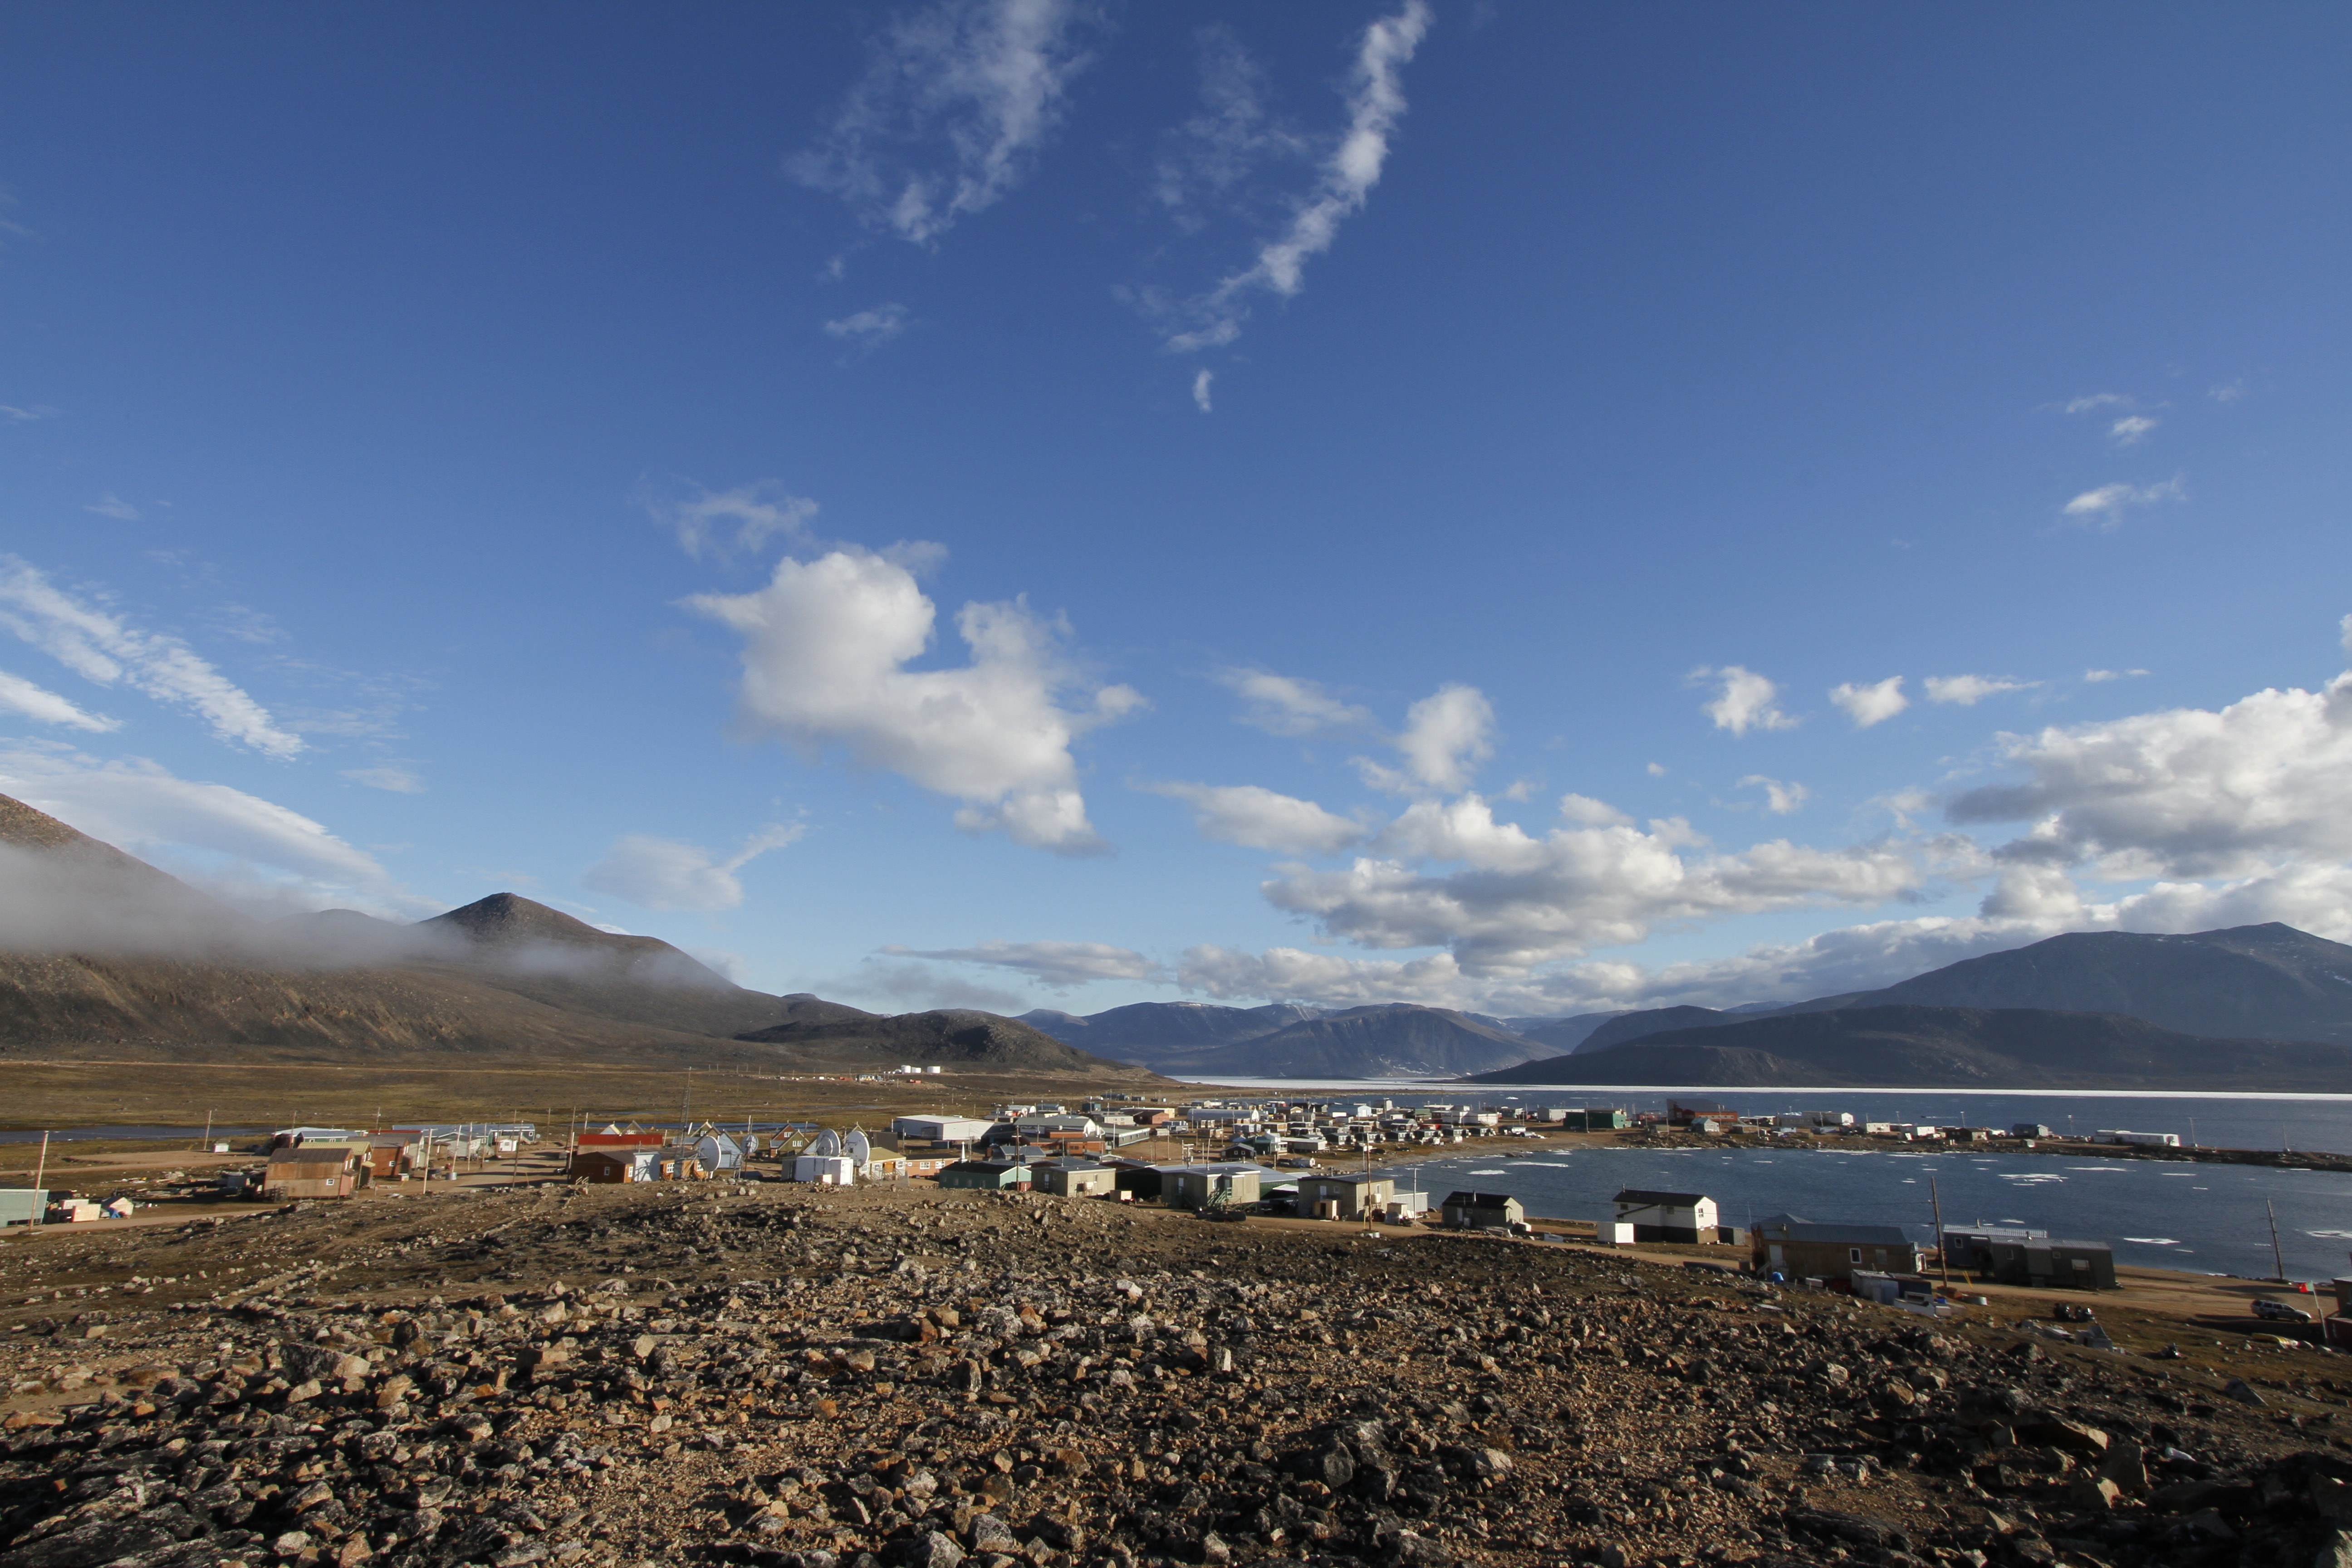 View of the community of Qikiqtarjuaq, Nunavut